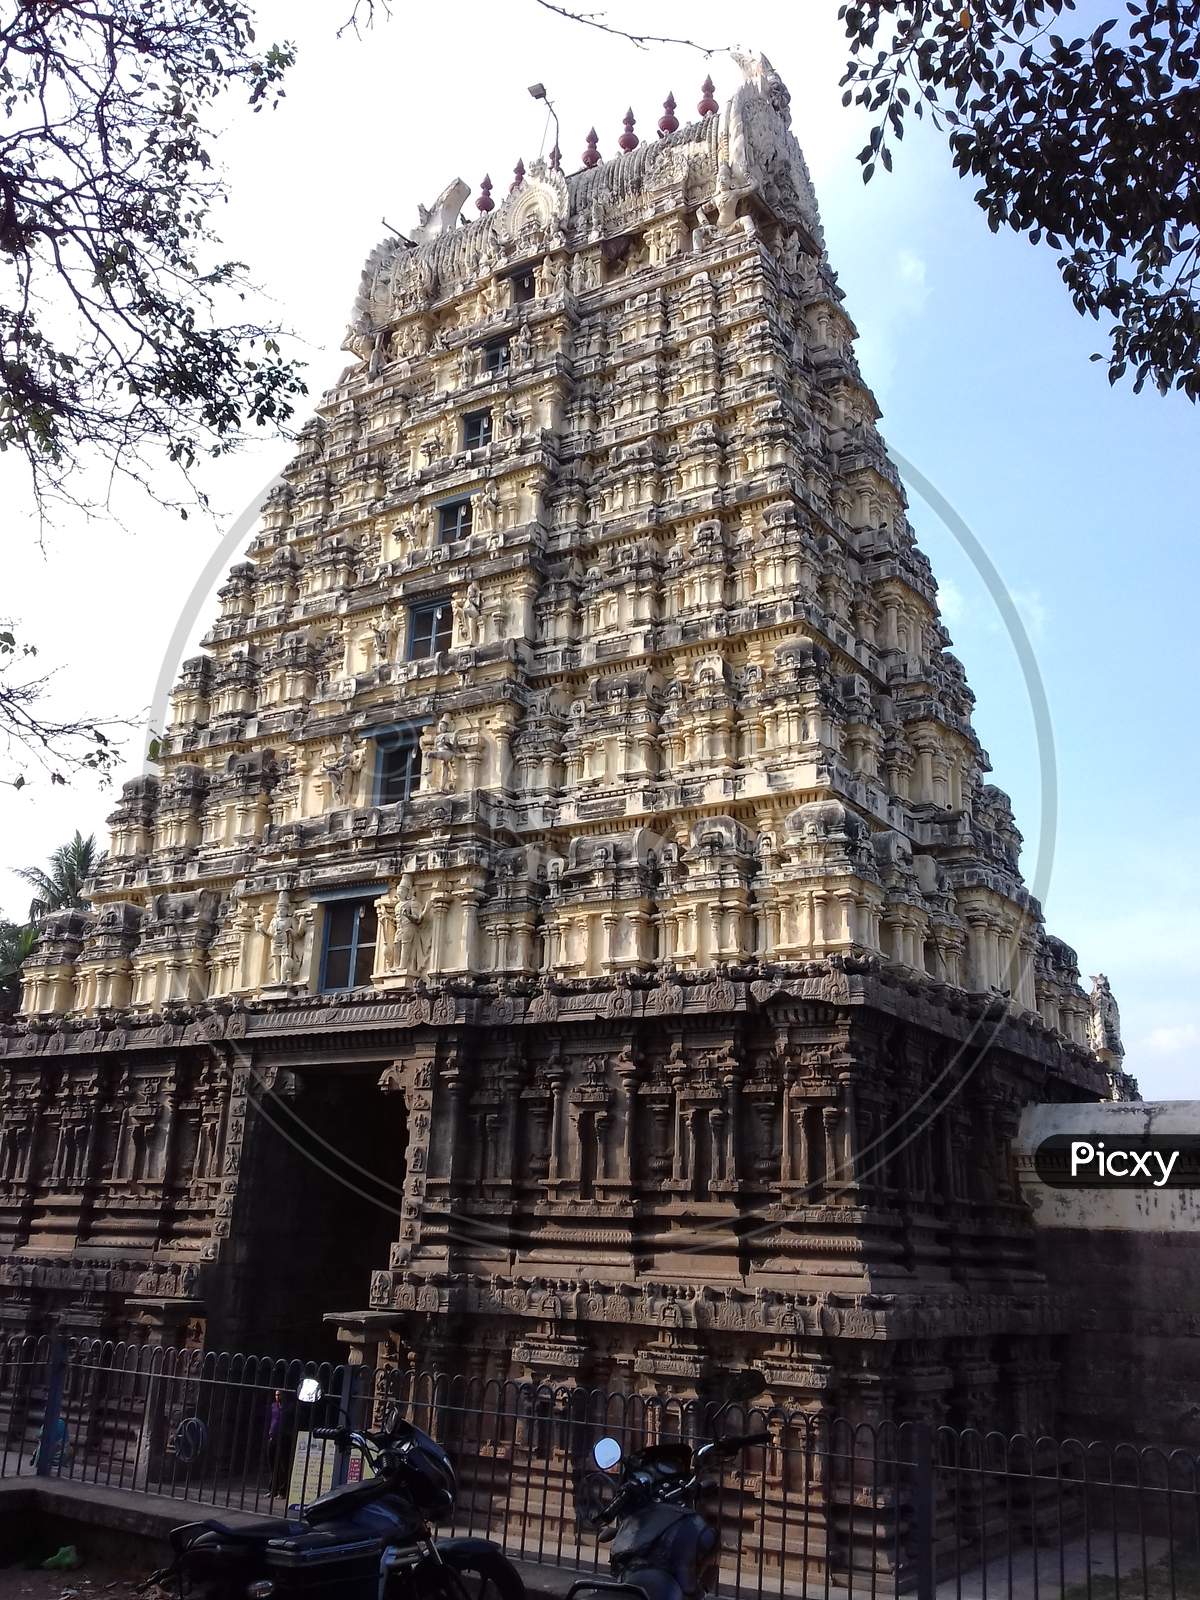 Jalakantheswar Temple